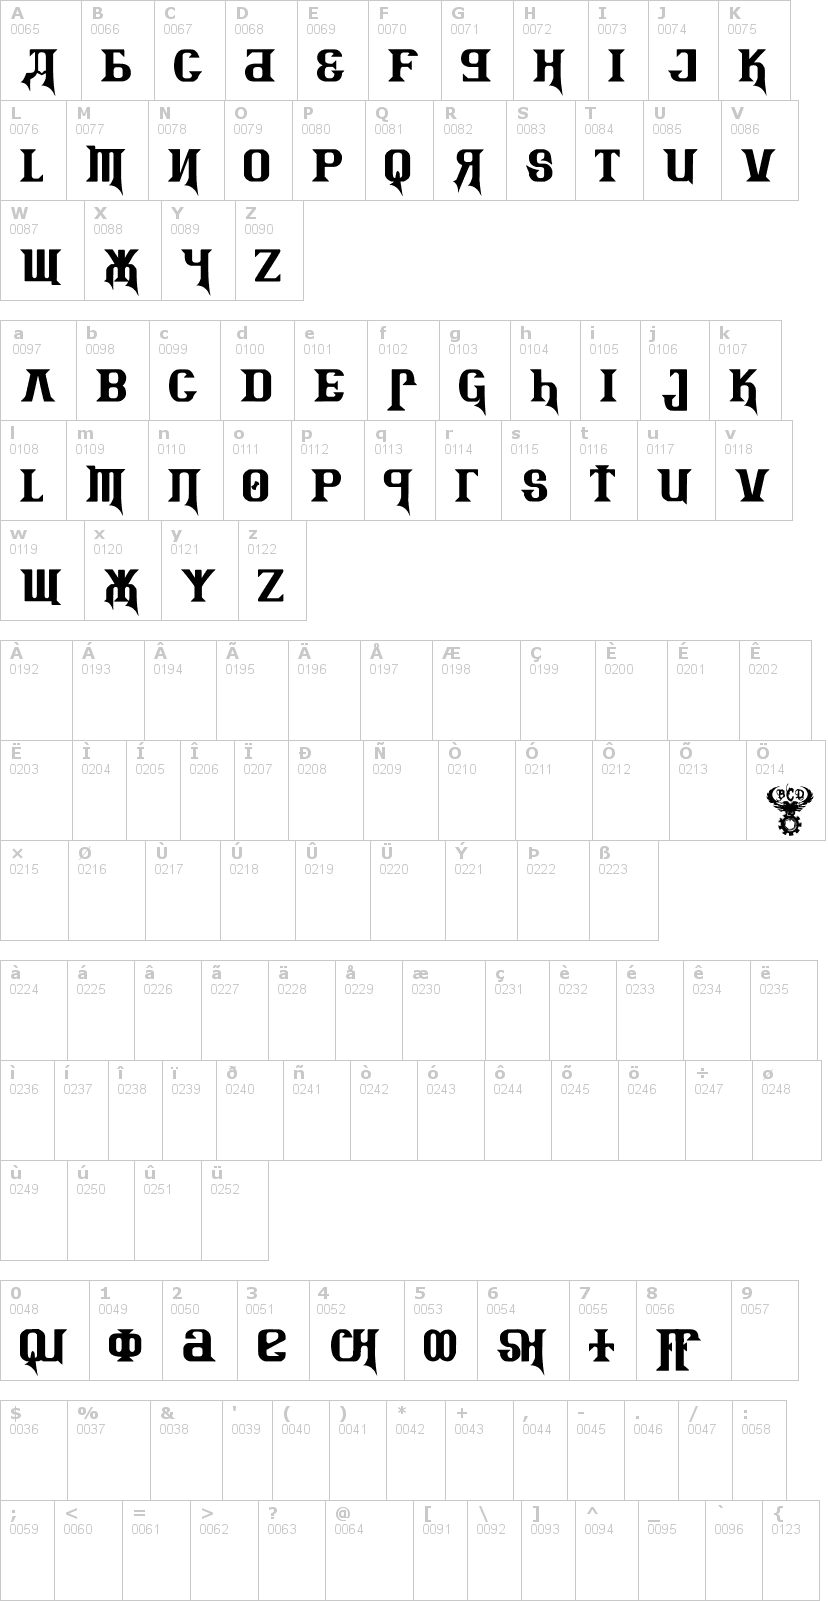 Lettere dell'alfabeto del font kremlin-advisor-display-kaps-bo con le quali è possibile realizzare adesivi prespaziati